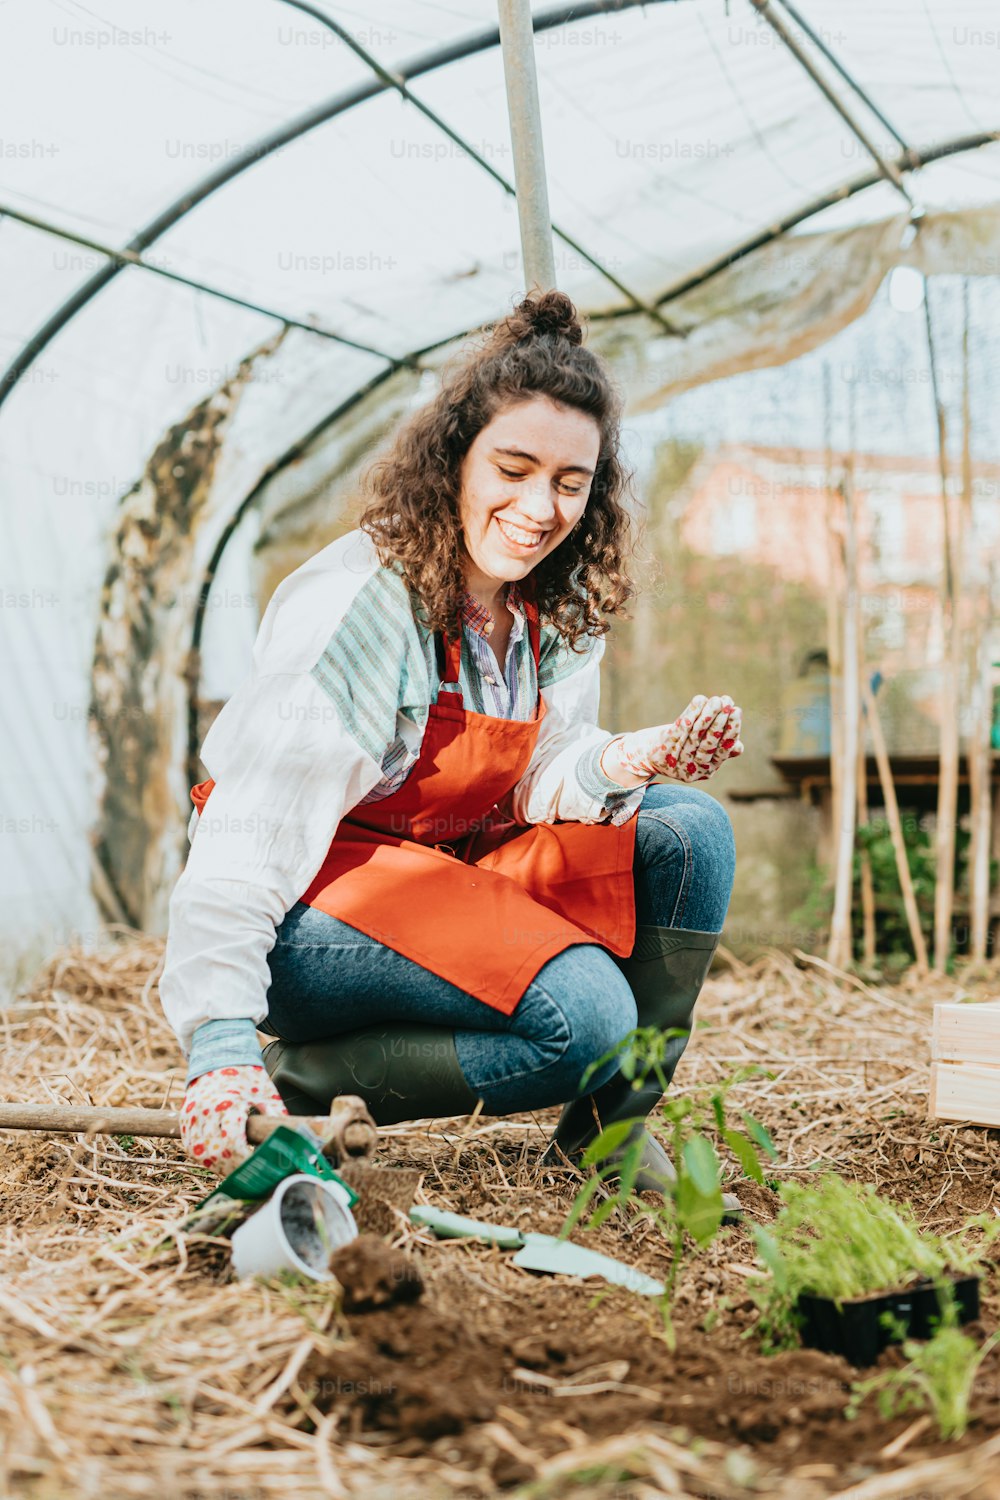 Una mujer arrodillada en un jardín sosteniendo una zanahoria